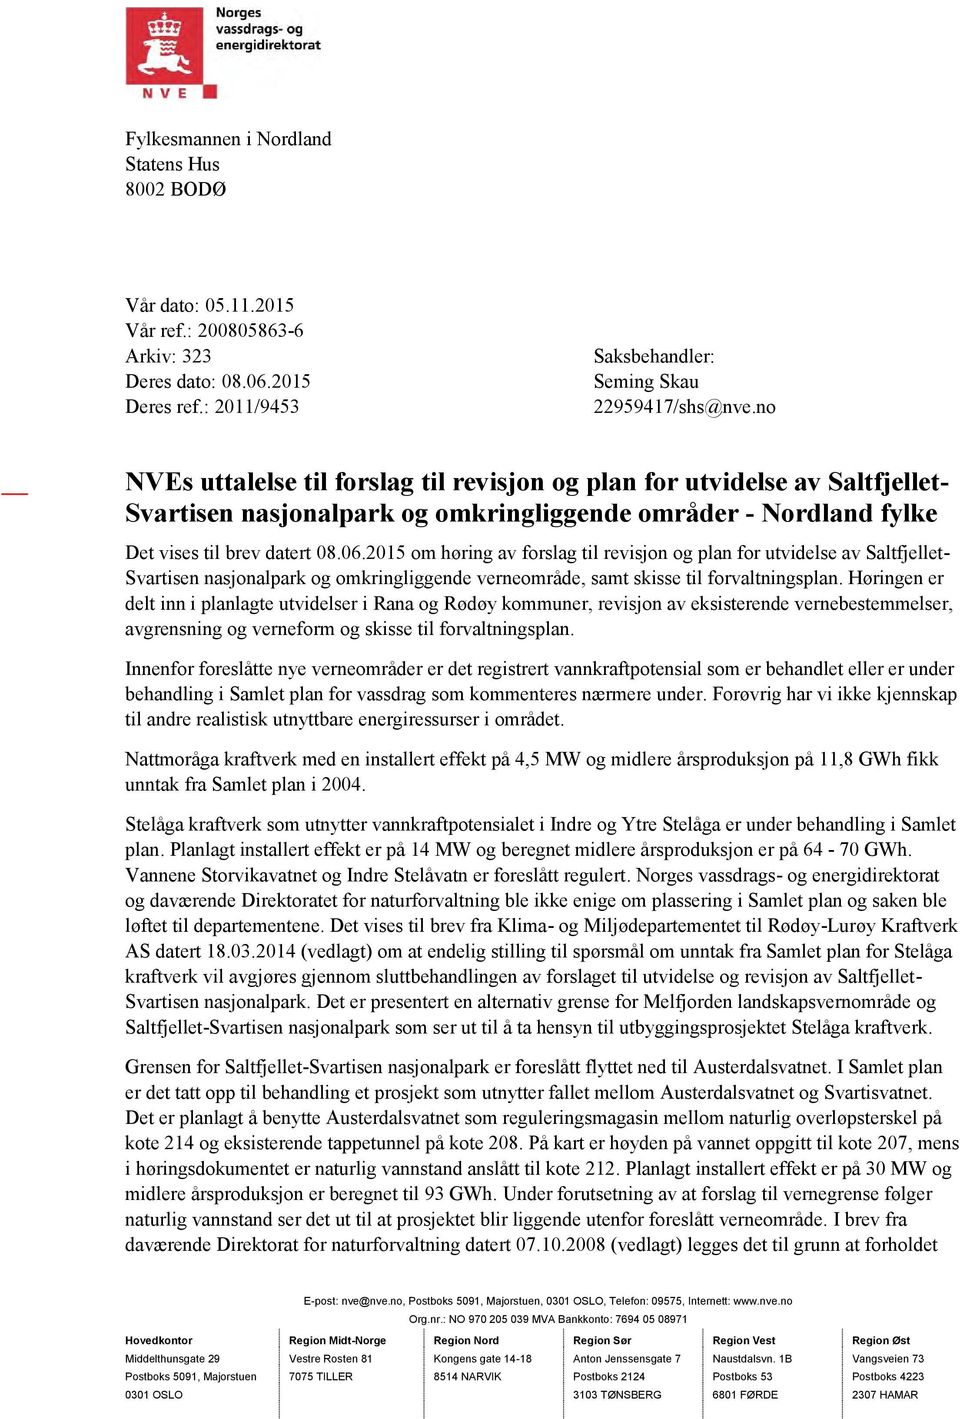 2015 om høring av forslag til revisjon og plan for utvidelse av Saltfjellet- Svartisen nasjonalpark og omkringliggende verneområde, samt skisse til forvaltningsplan.